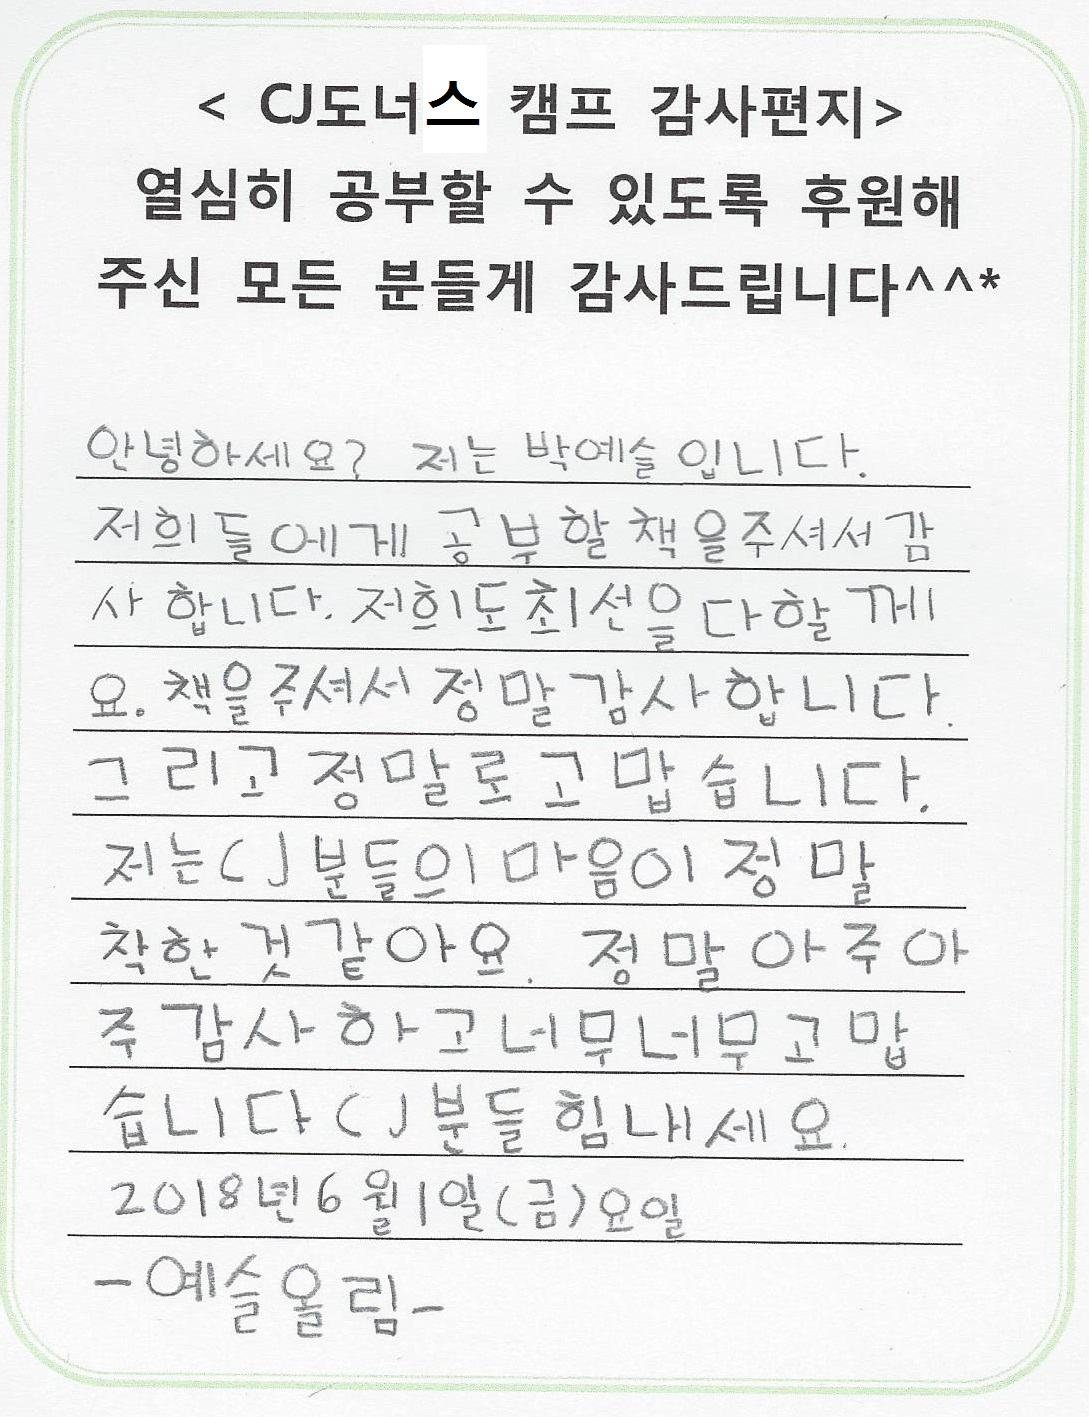 2학년 박예슬의 감사편지